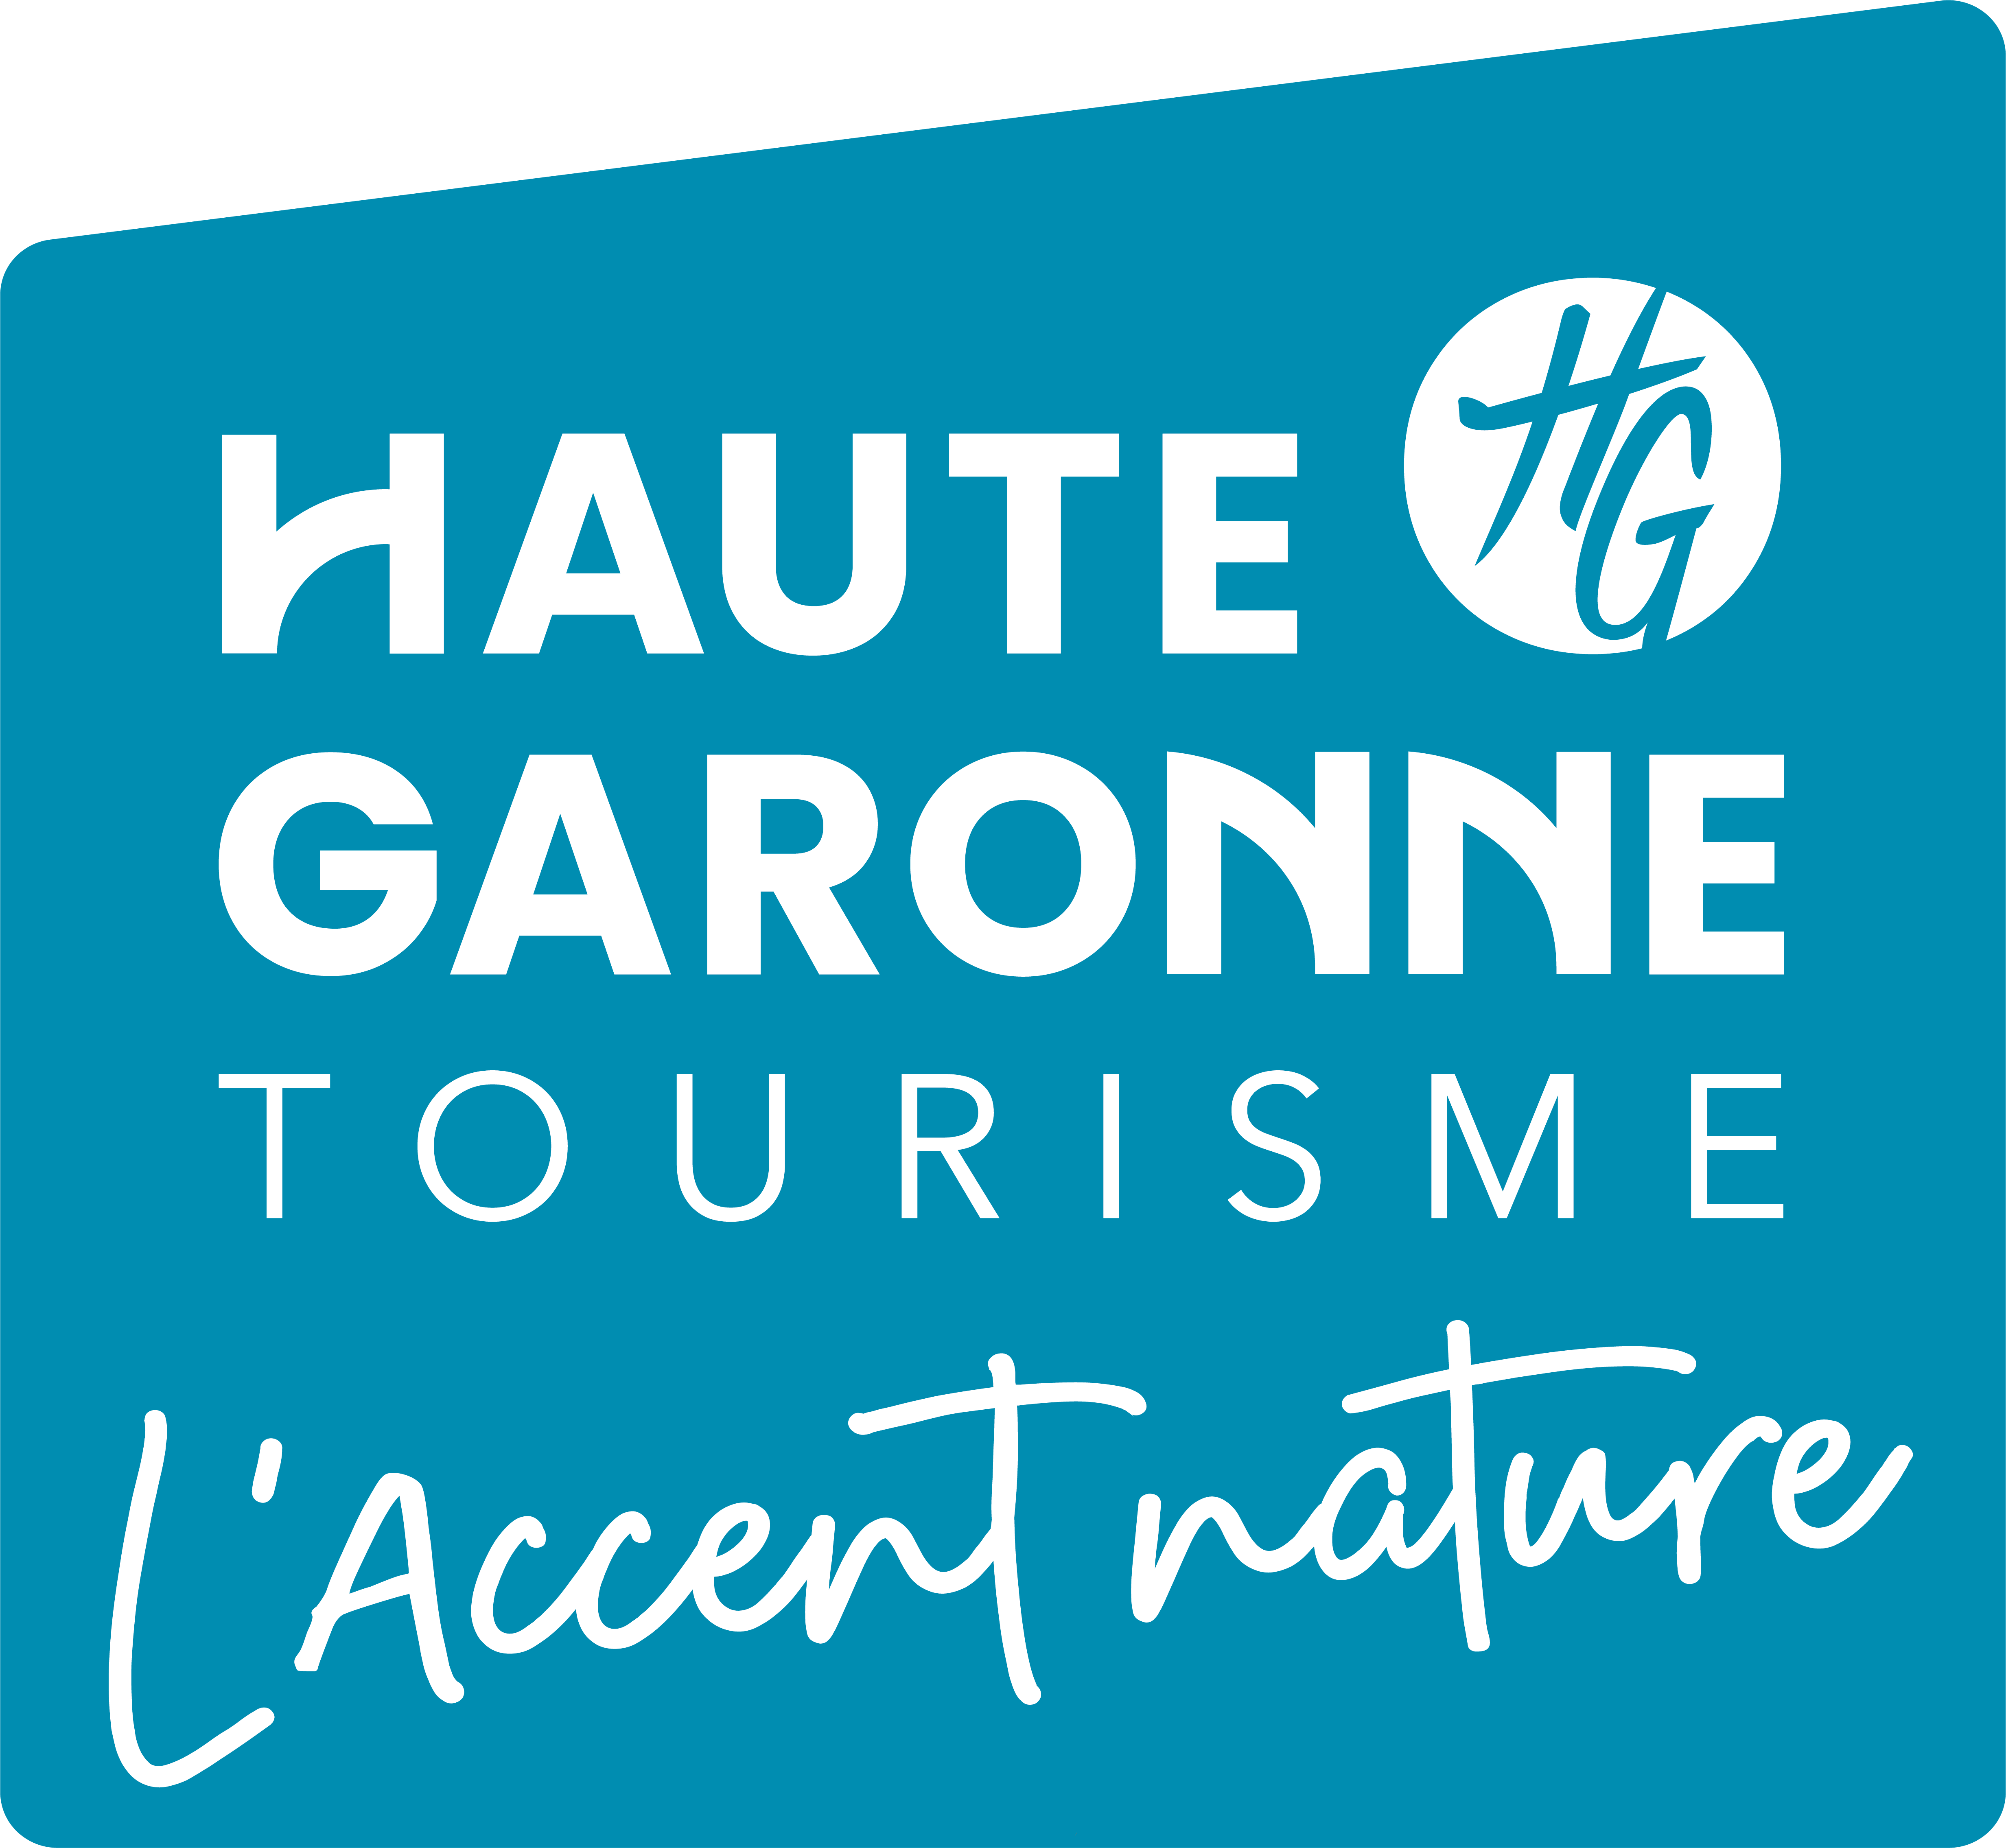 Radio Galaxie 98.5 FM - Haute Garonne Tourisme